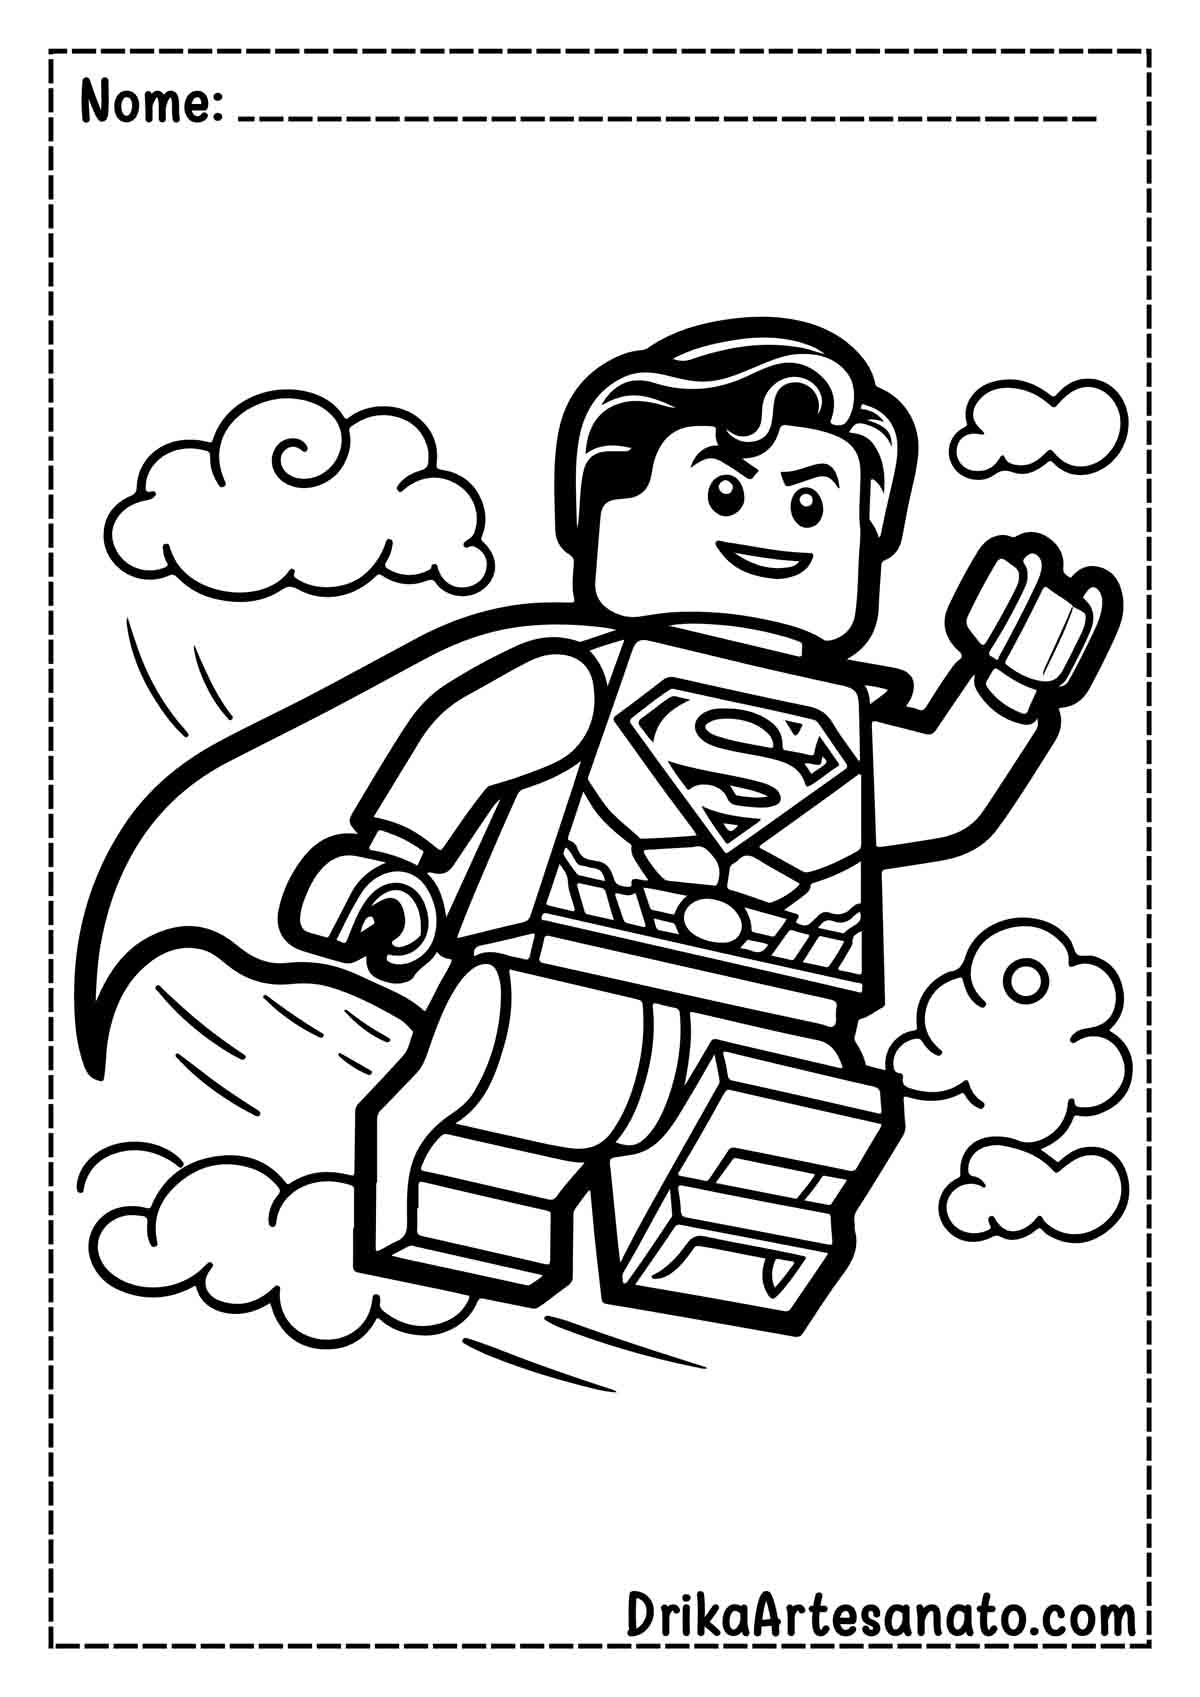 Desenho do Superman Lego para Imprimir e Colorir